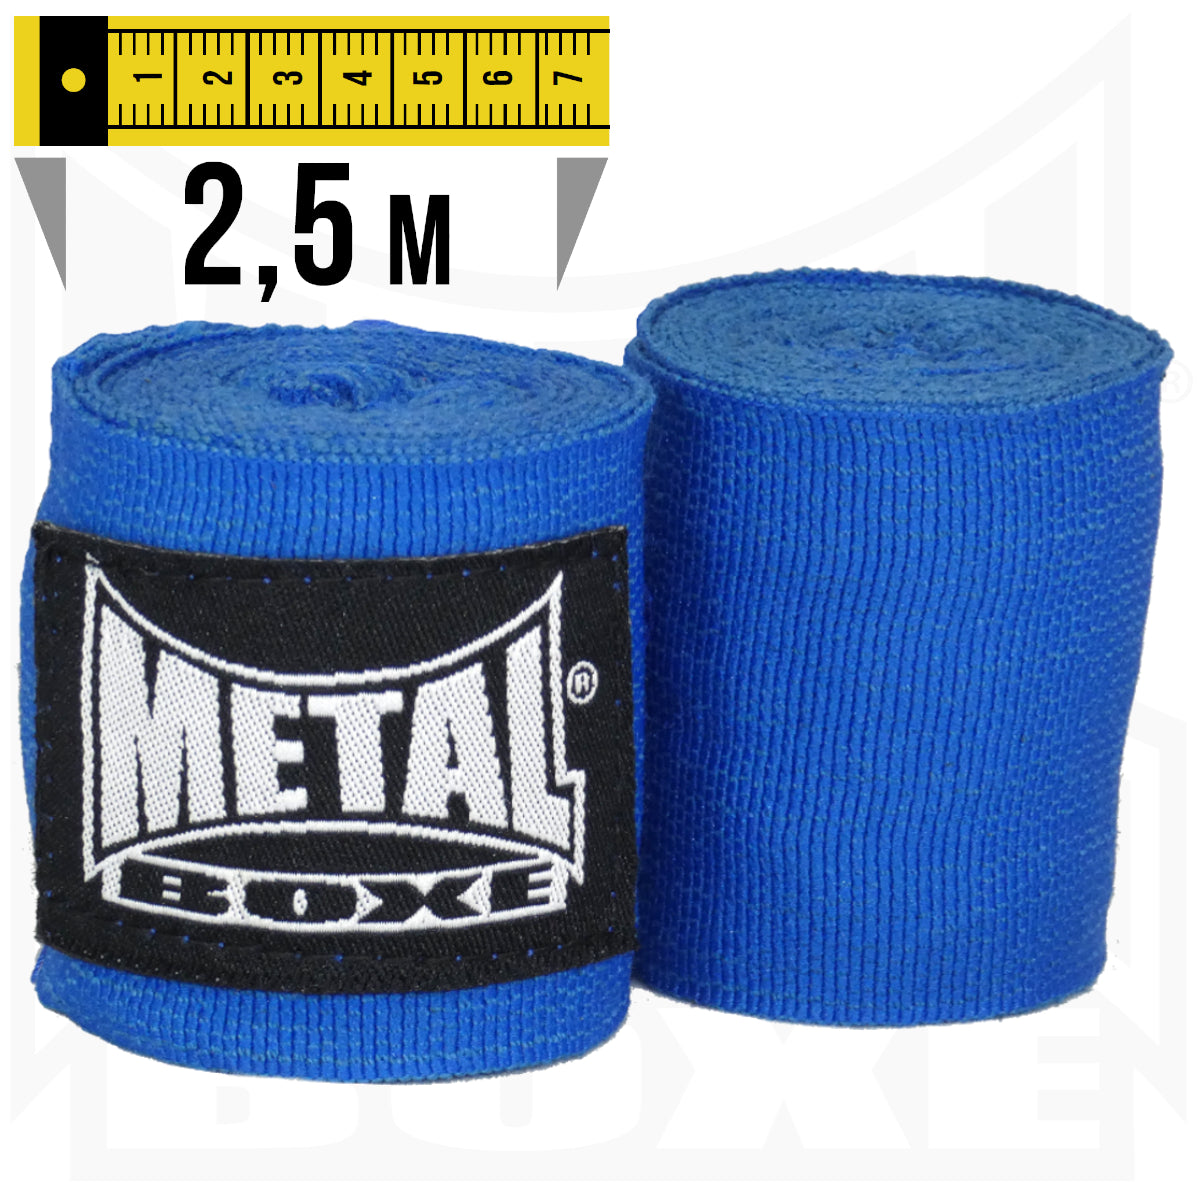 Boxbandagen Metal Boxe - Blau - 2,5 m